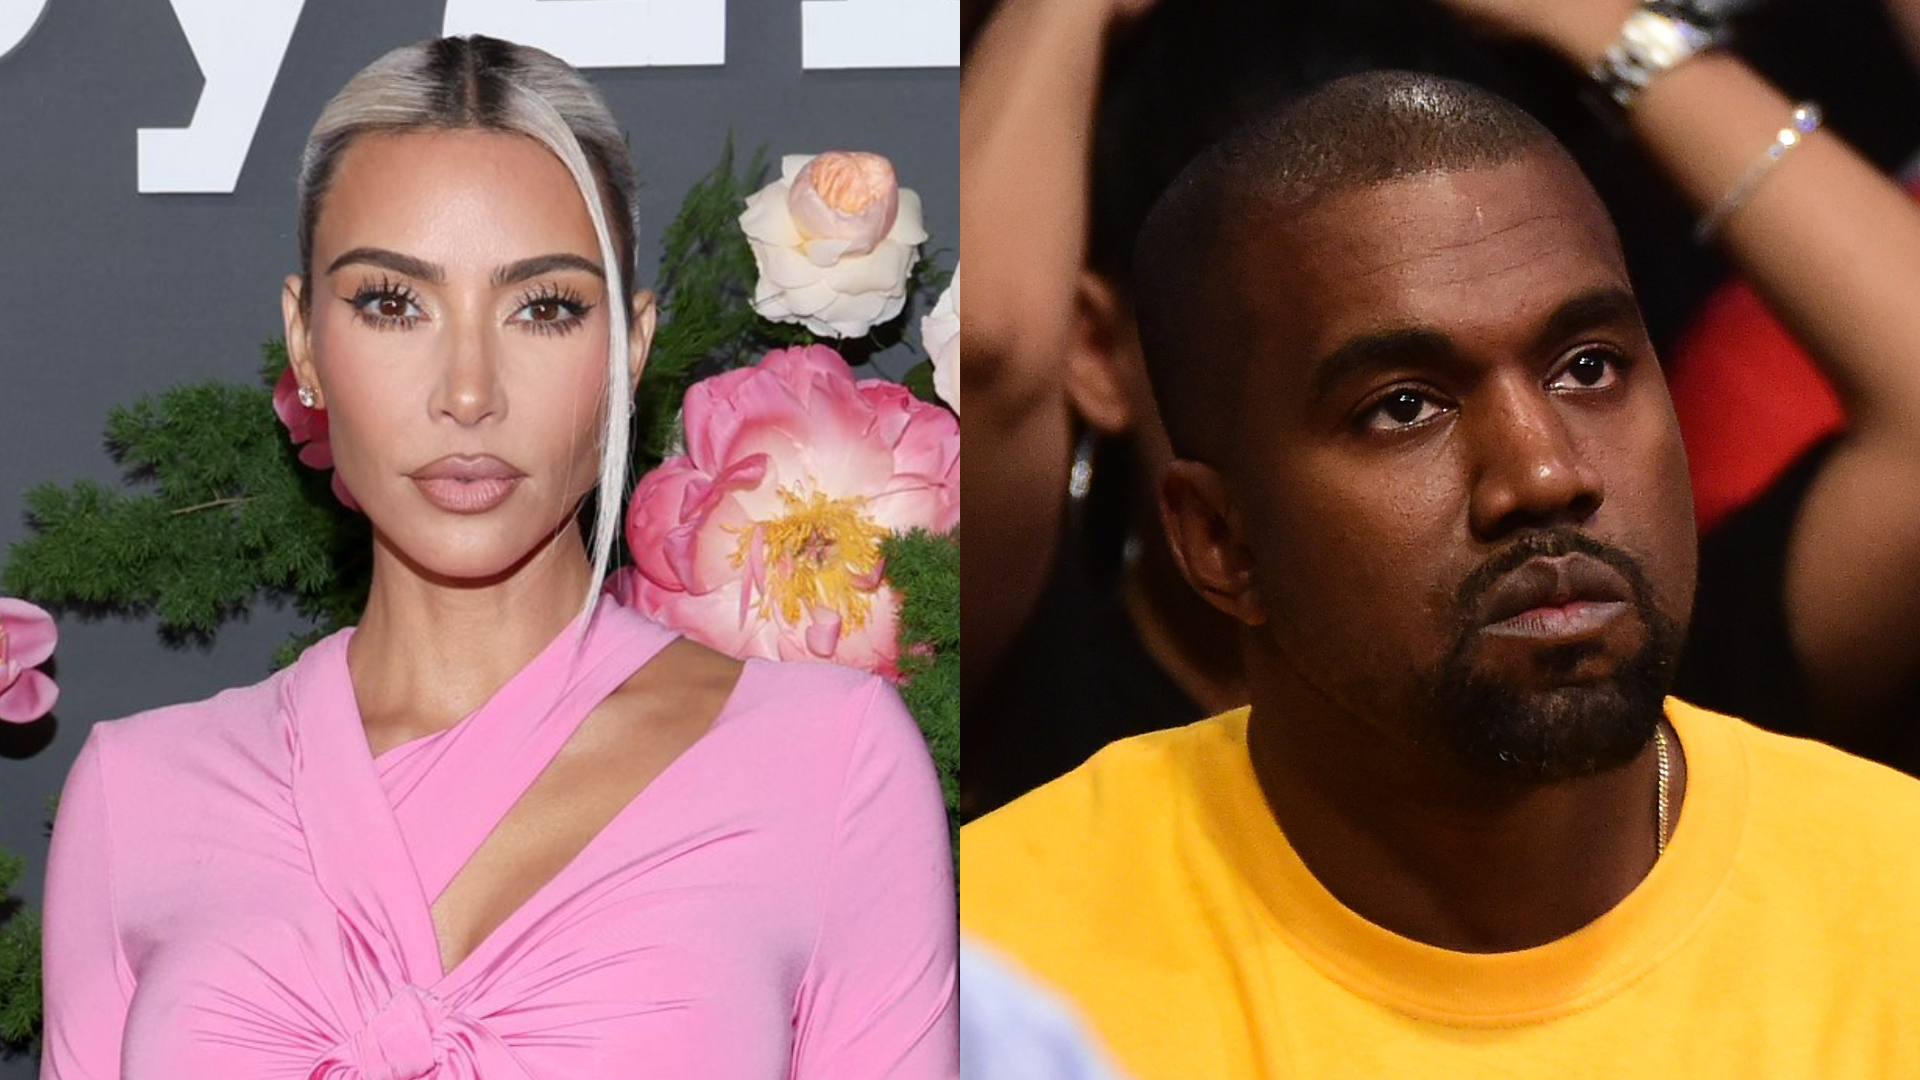 Site revela reação de Kim Kardashian ao descobrir que Kanye West mostrou vídeos íntimos dela a funcionários